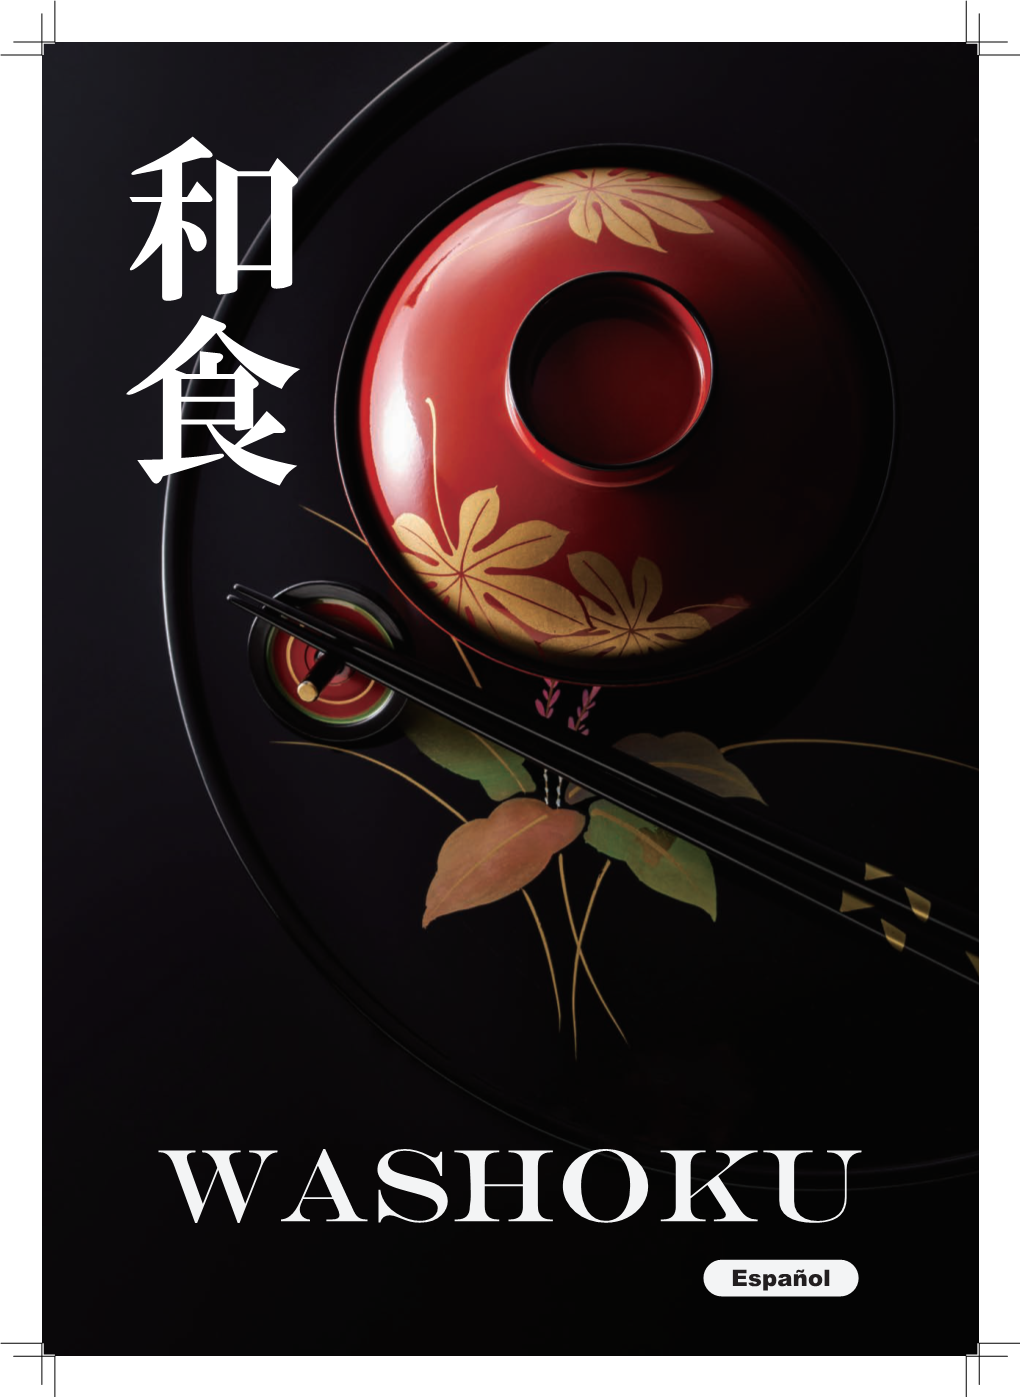 Washoku Fue Registrada Por La UNESCO Como Patrimonio Cultural Intangible, Pero ¿Qué Es? Sumário Las Cuatro Características De La Cultura Washoku